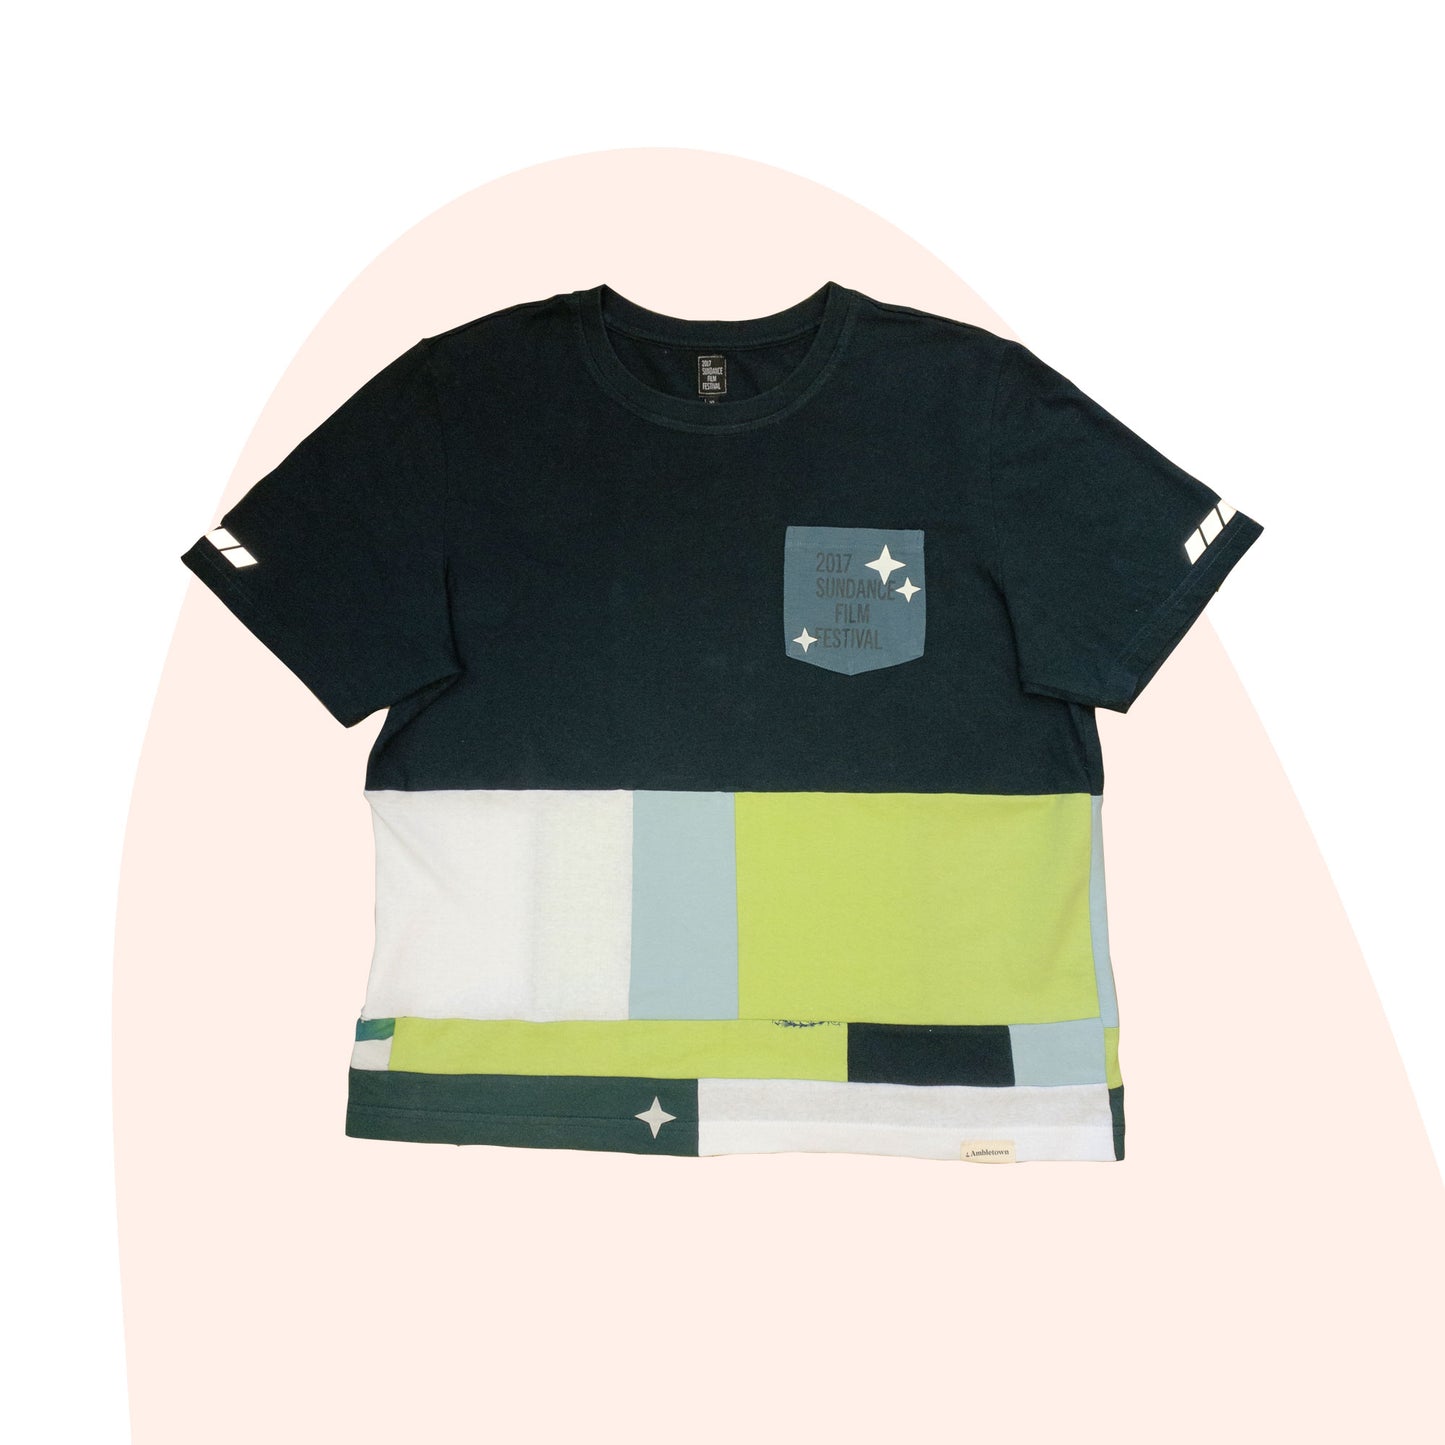 Patchwork Shirt #13 - Green / Blue - Size L